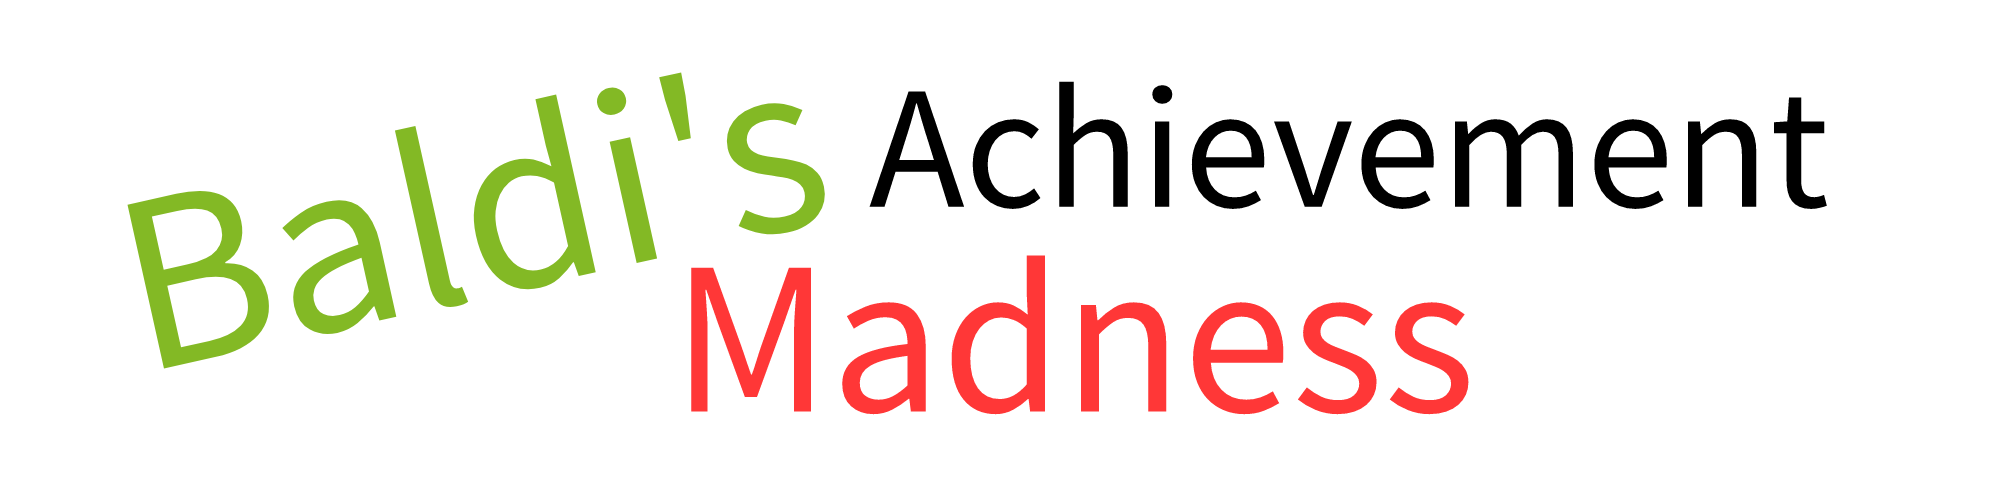 Baldi's Achievement Madness V2